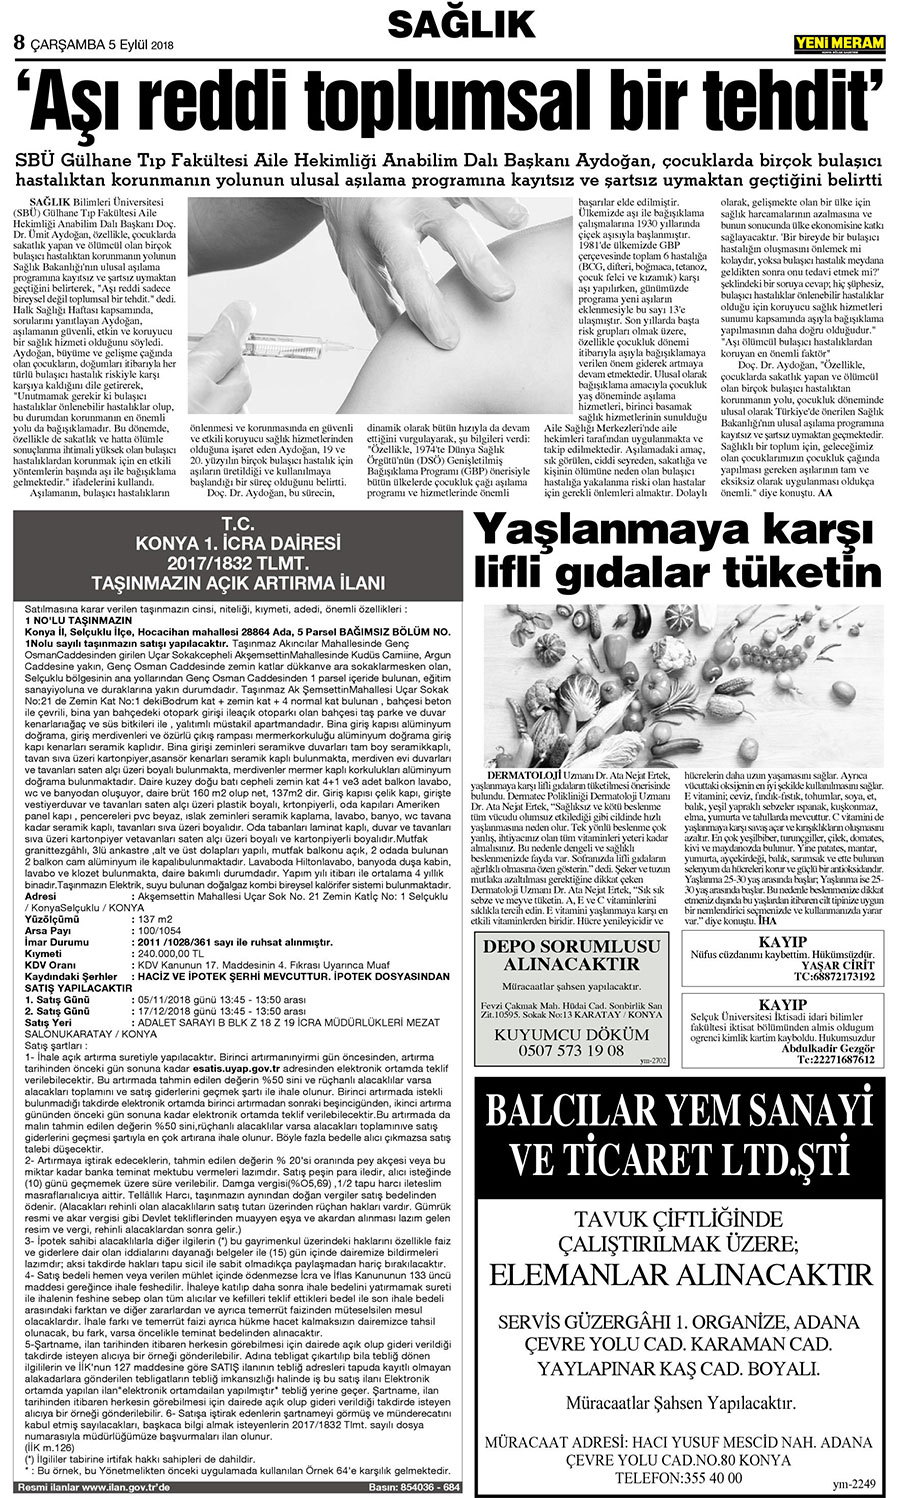 5 Eylül 2018 Yeni Meram Gazetesi